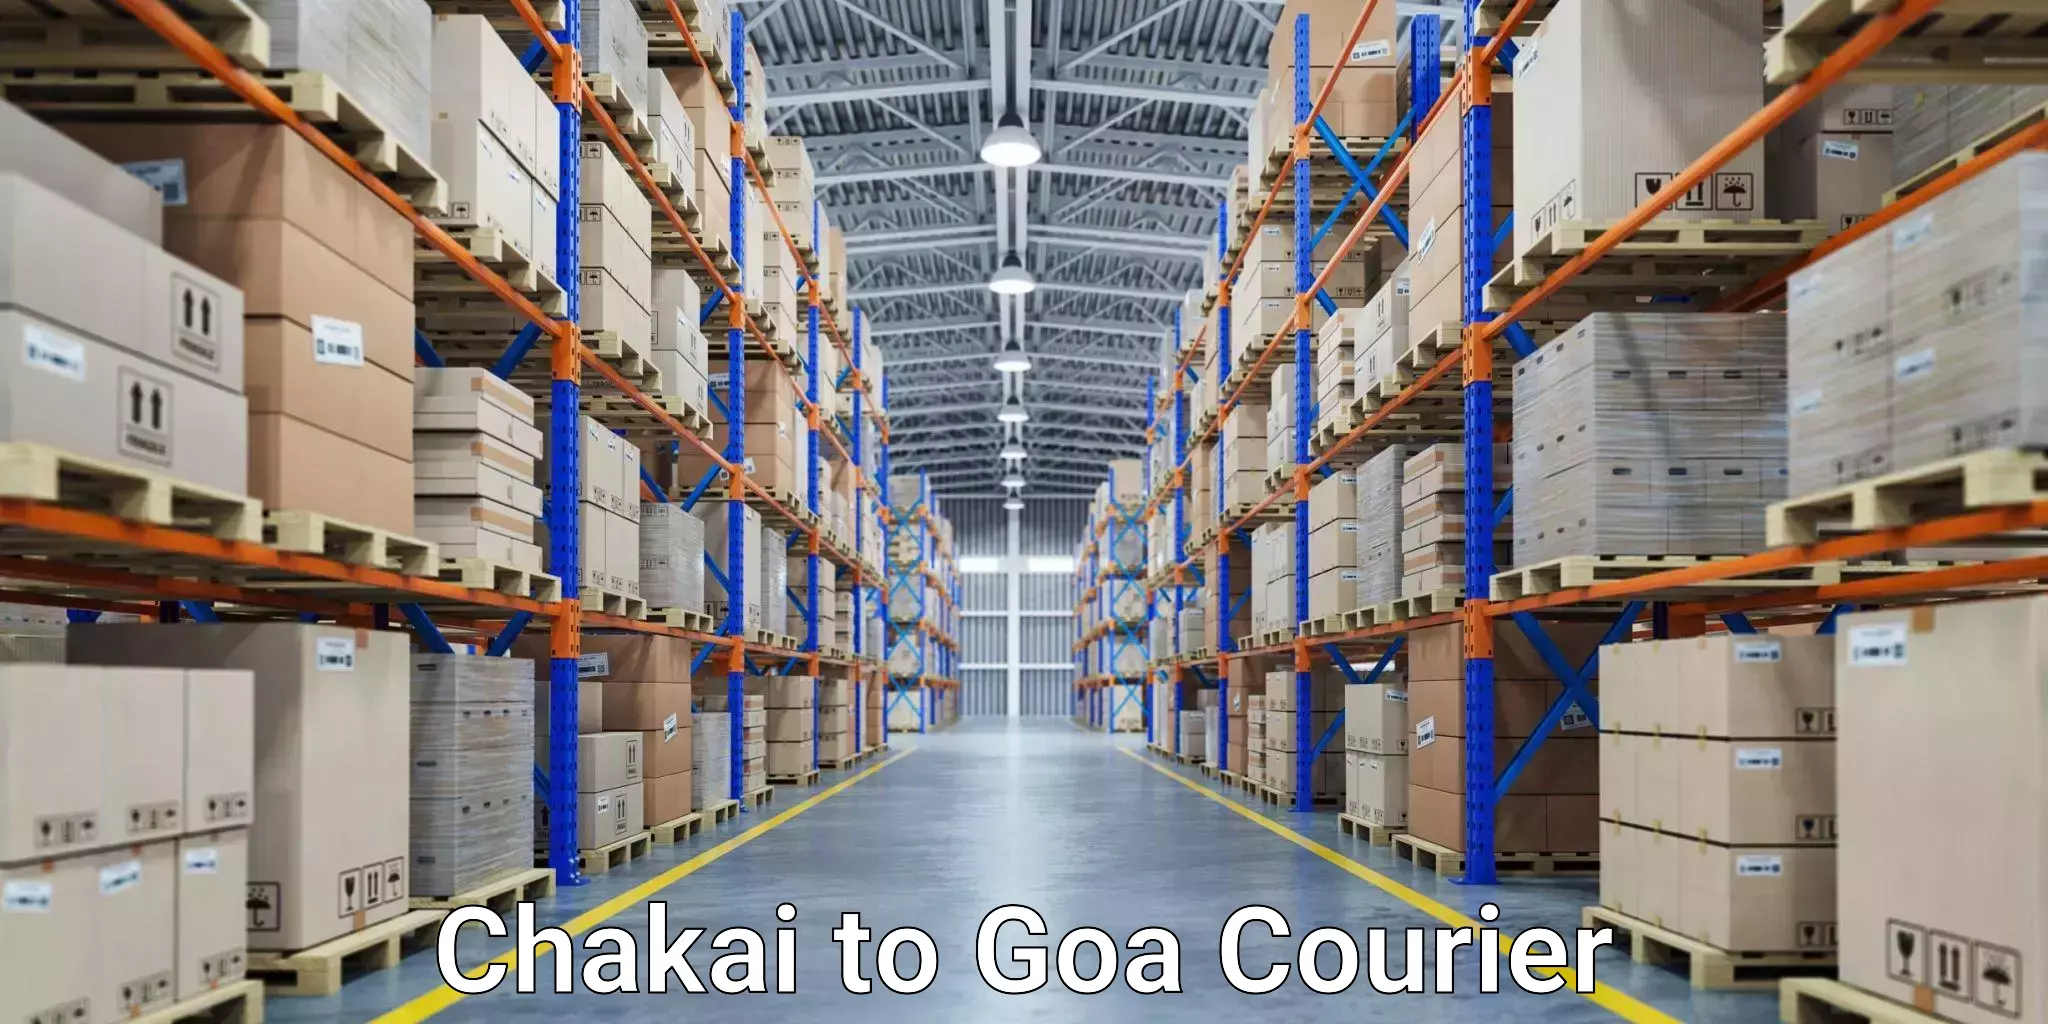 Express mail service Chakai to IIT Goa